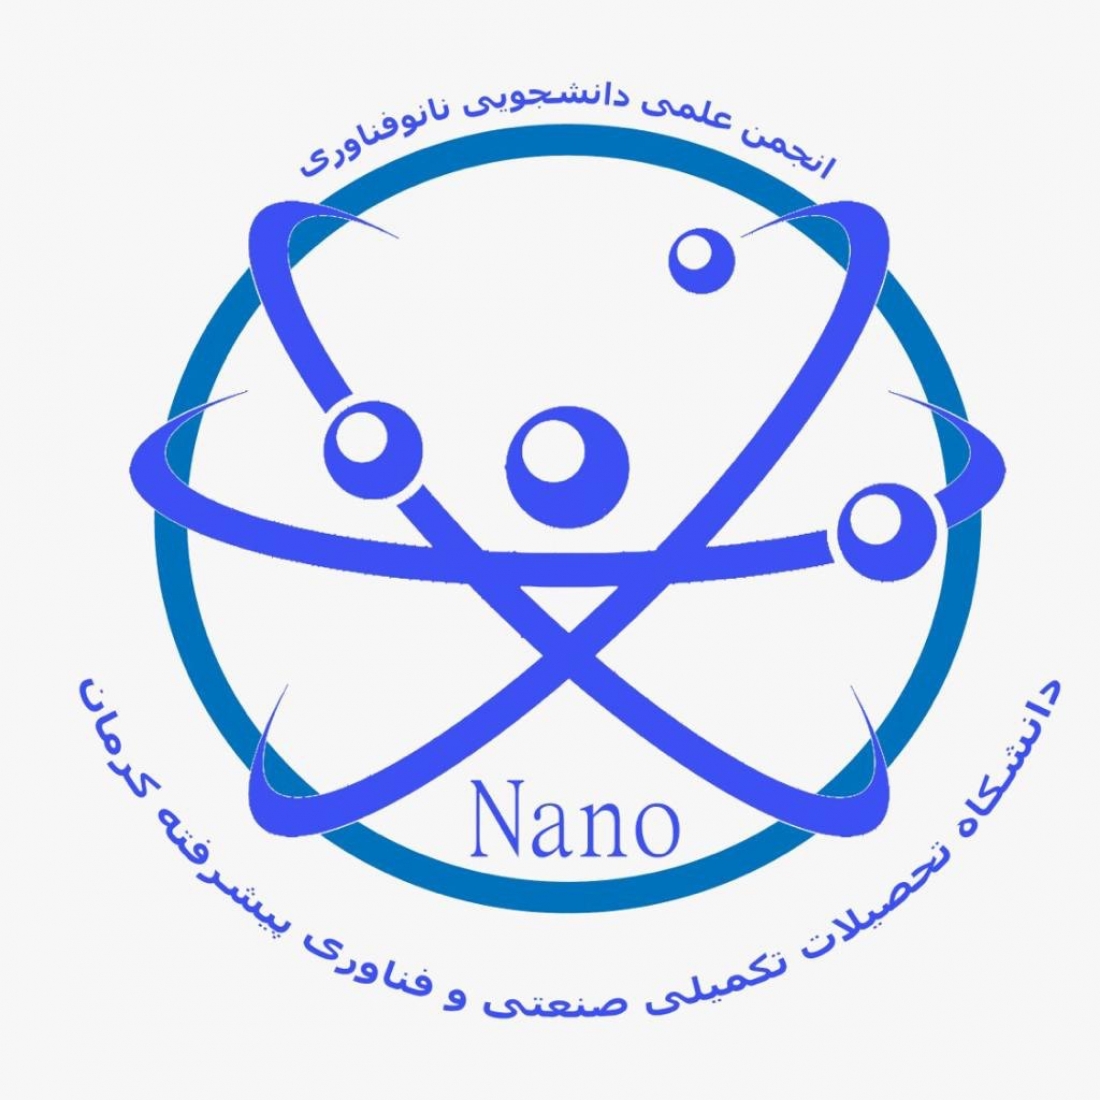 انجمن علمی دانشجویی نانو فناوری تحصیلات تکمیلی صنعتی و فناوری پیشرفته کرمان